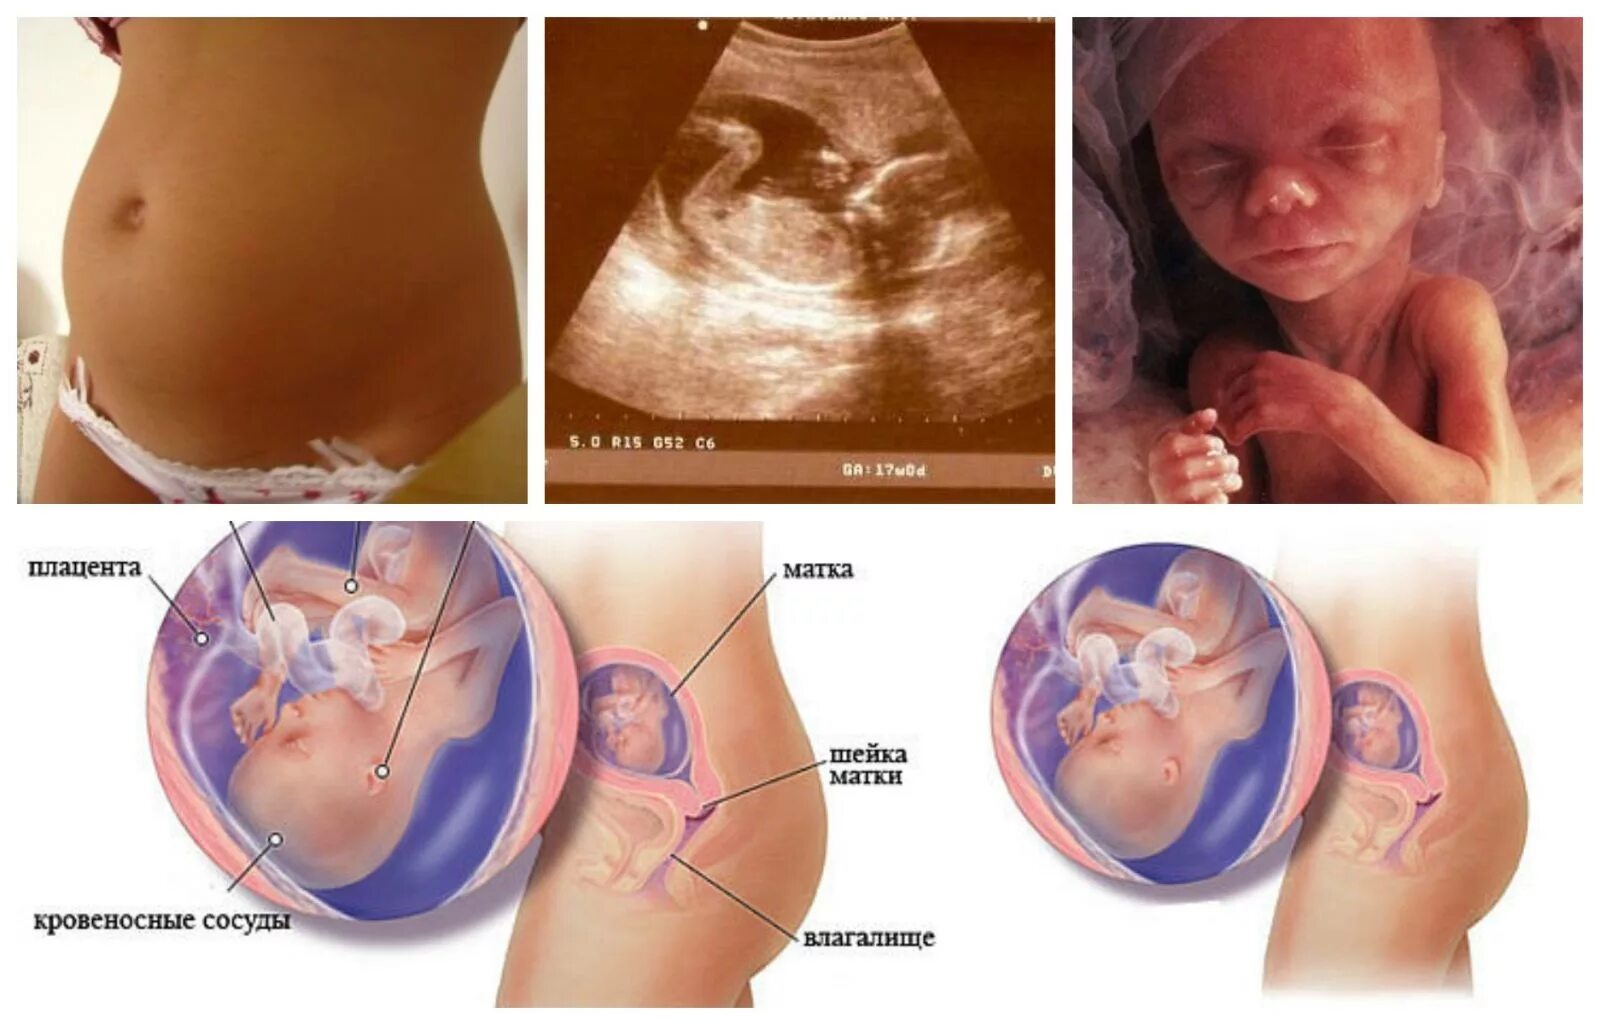 17 недель размер плода. Размер малыша на 17 неделе беременности. Ребенок в животе на 17 неделе беременности. Плод ребенка на 17 неделе беременности. 16-17 Недель беременности.